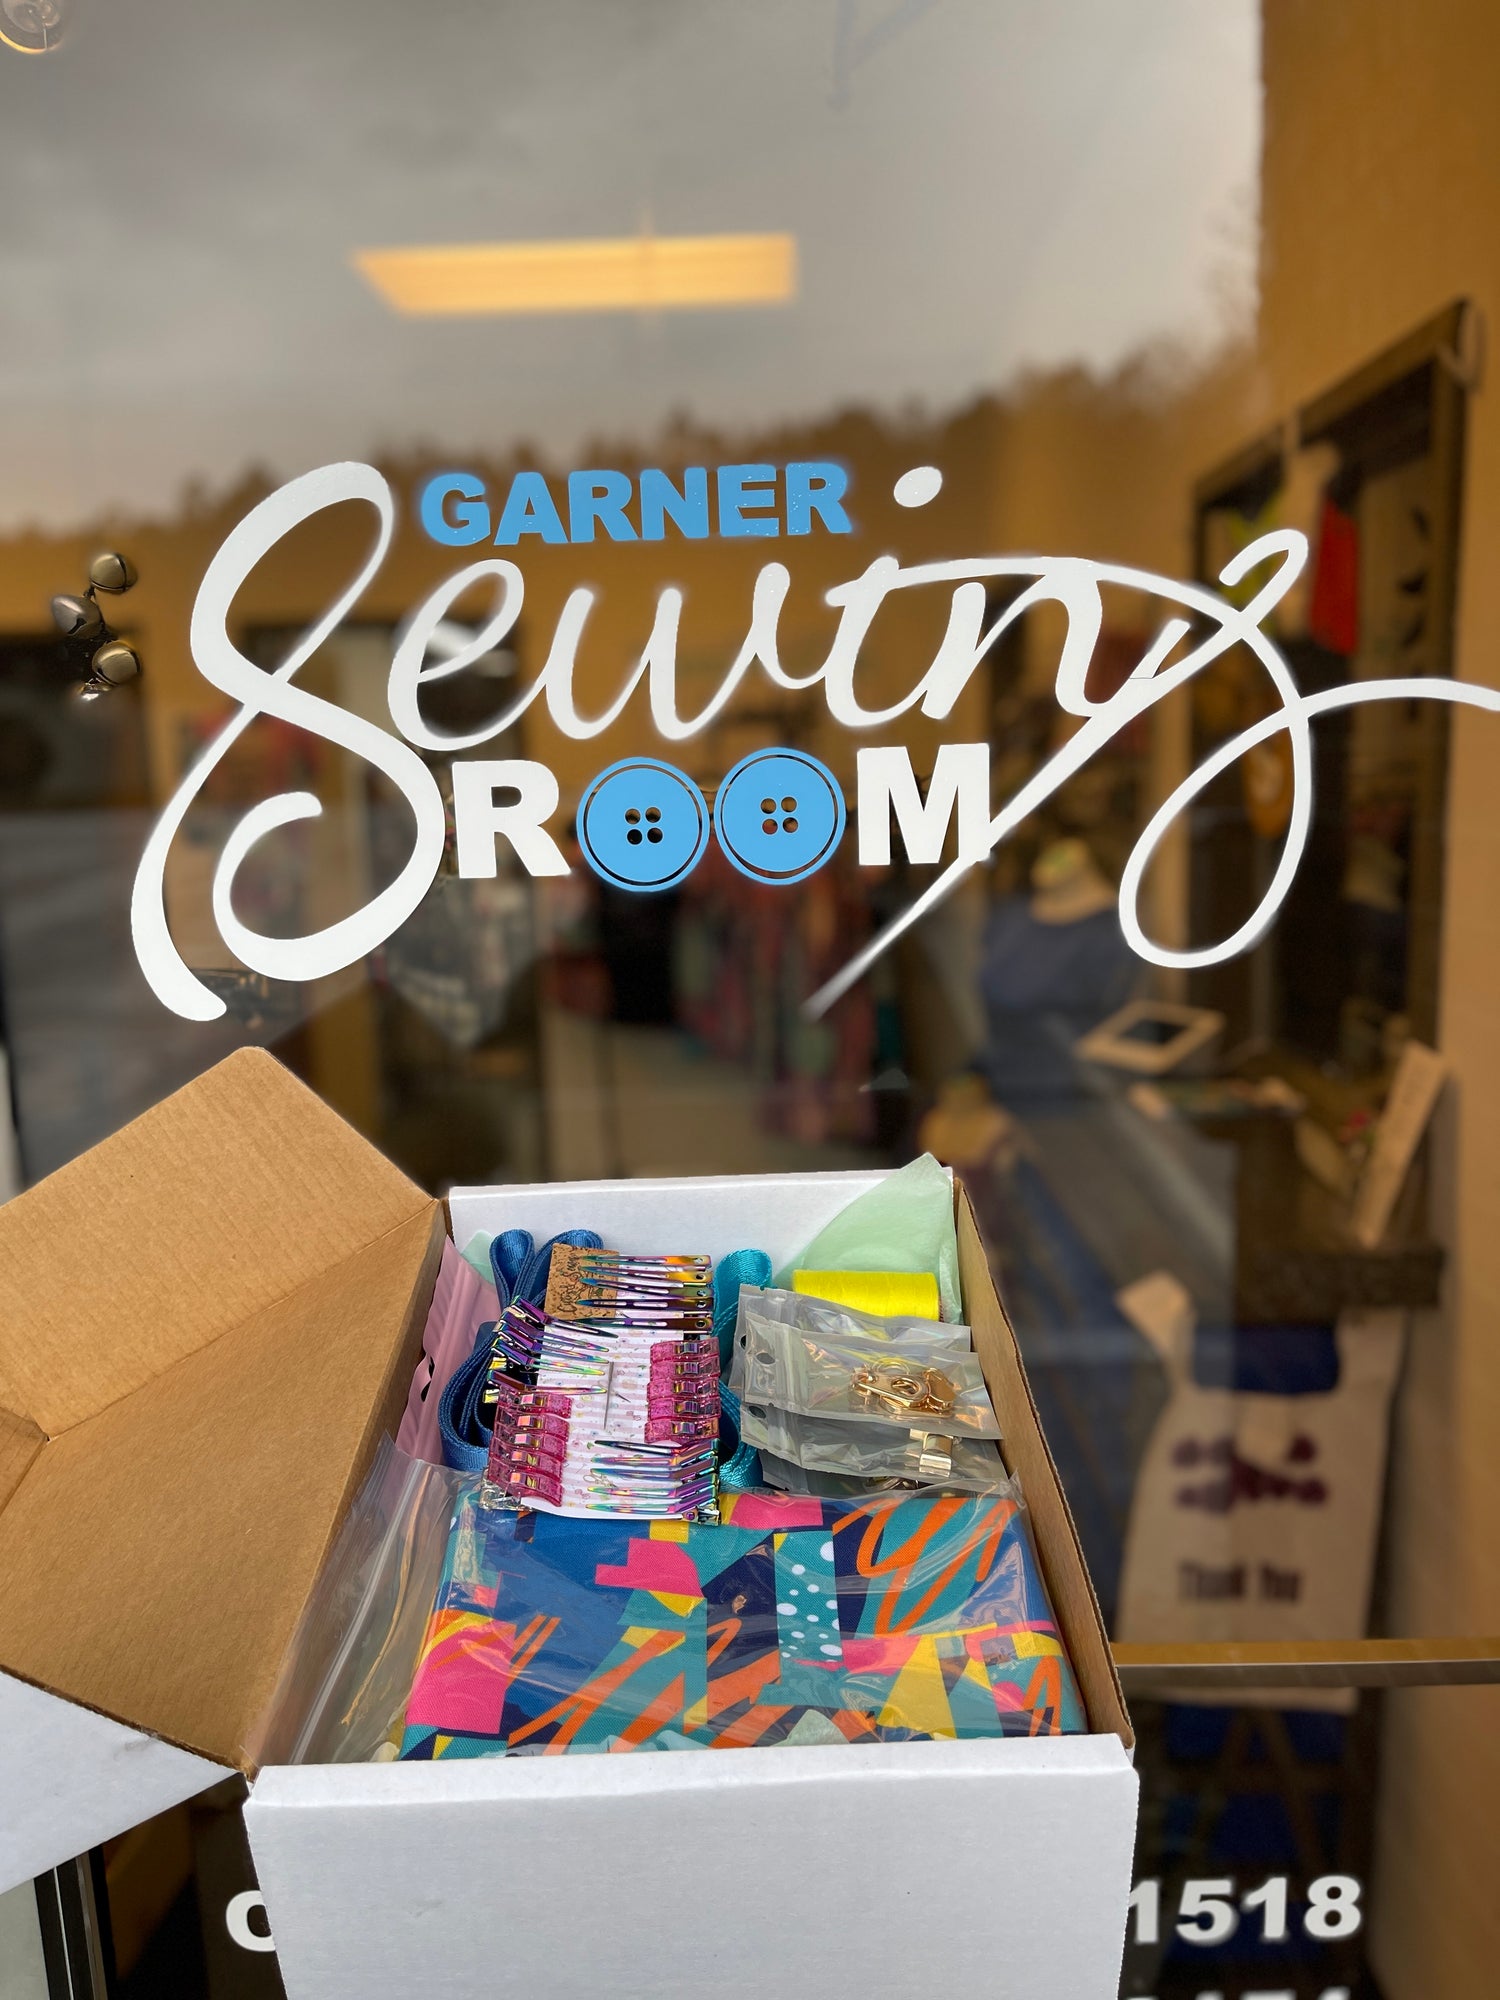 Kids DIY Snuggle Pets Sewing Kit – Garner Sewing Room